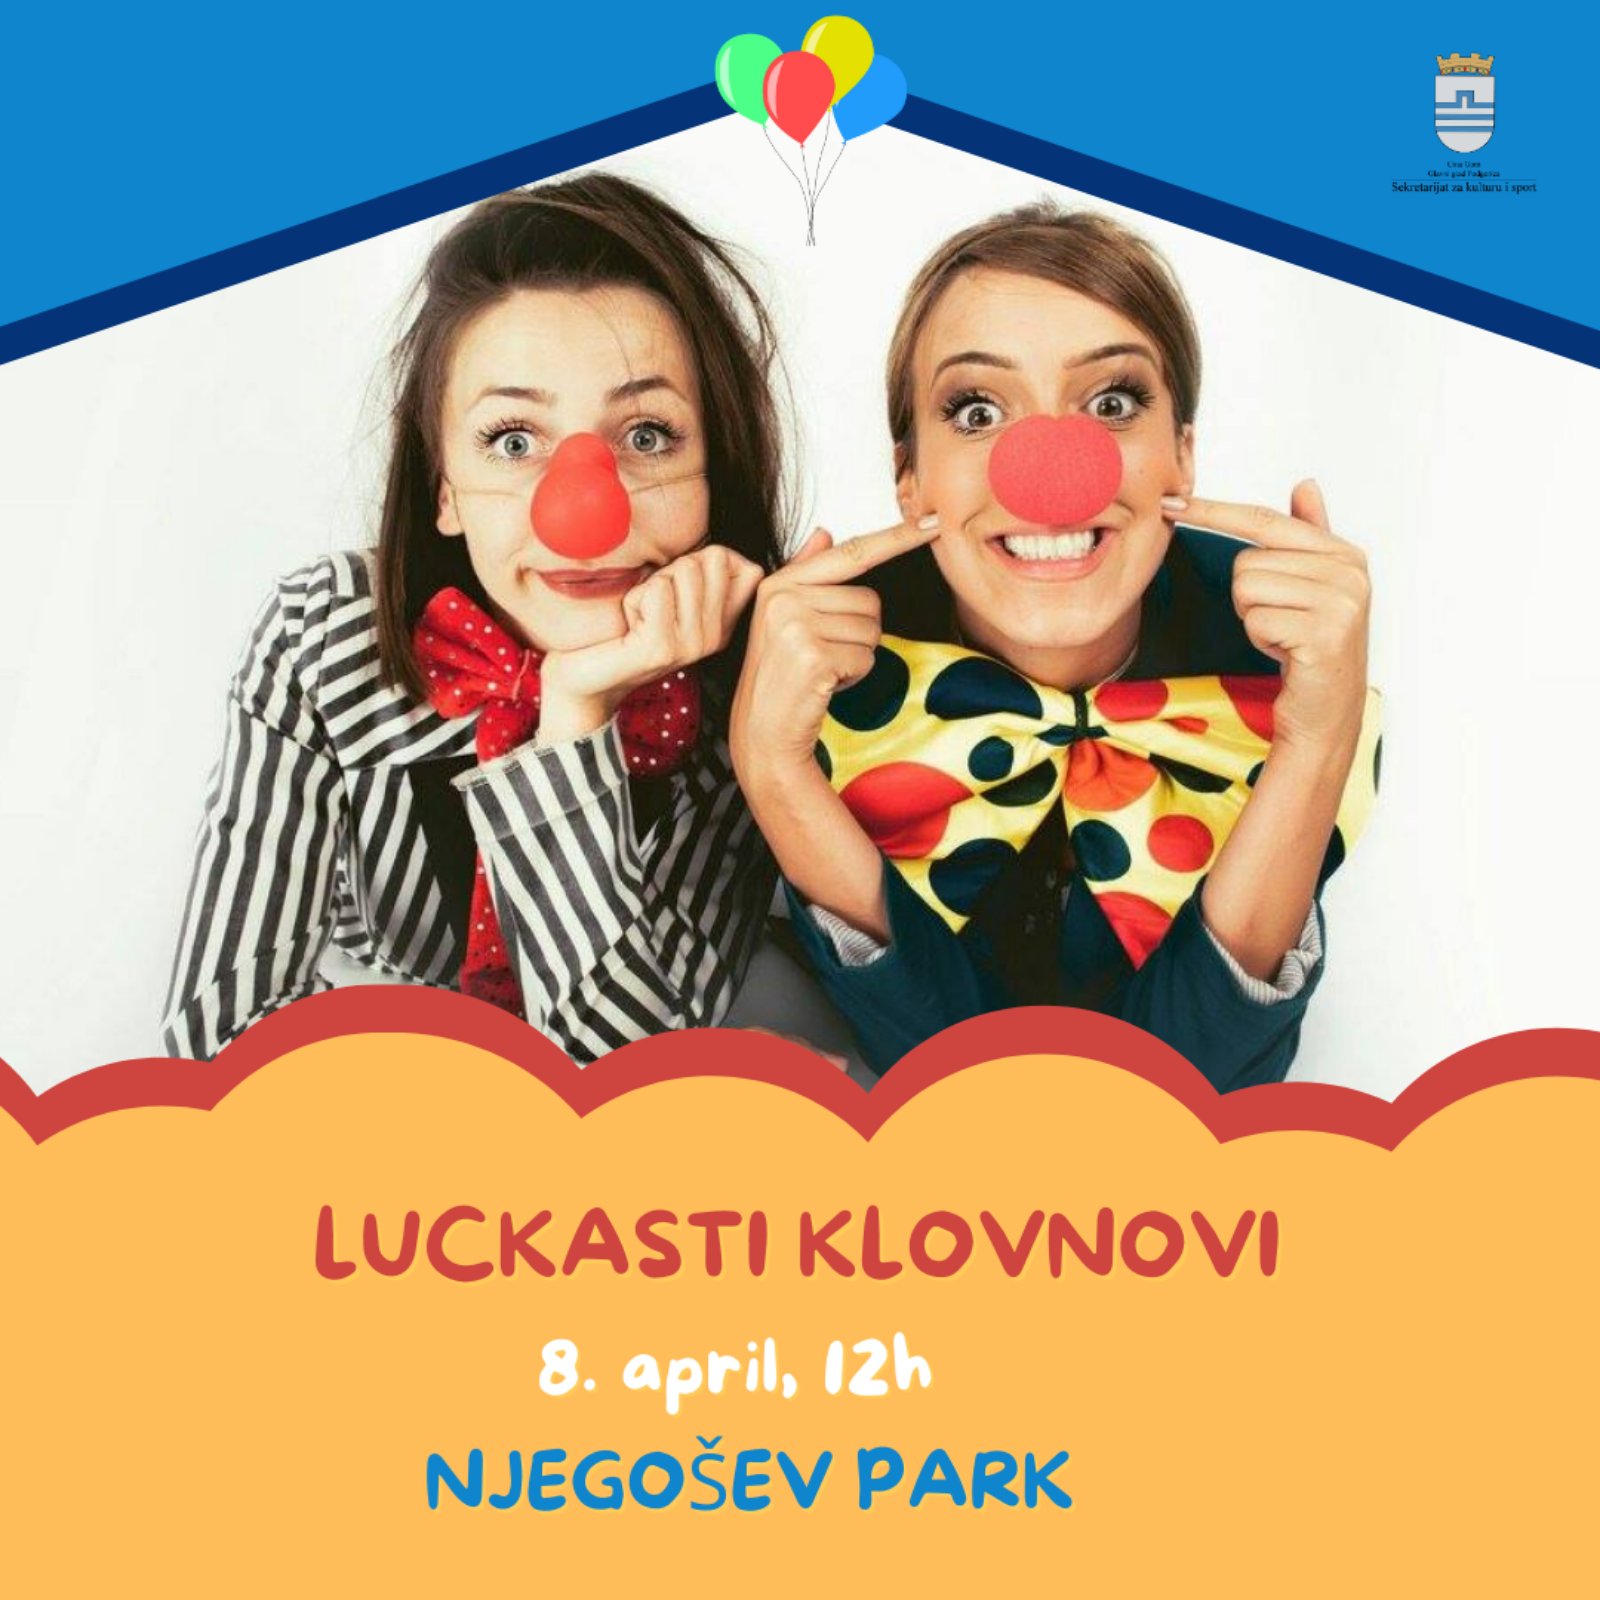 Luckasti-klovnovi